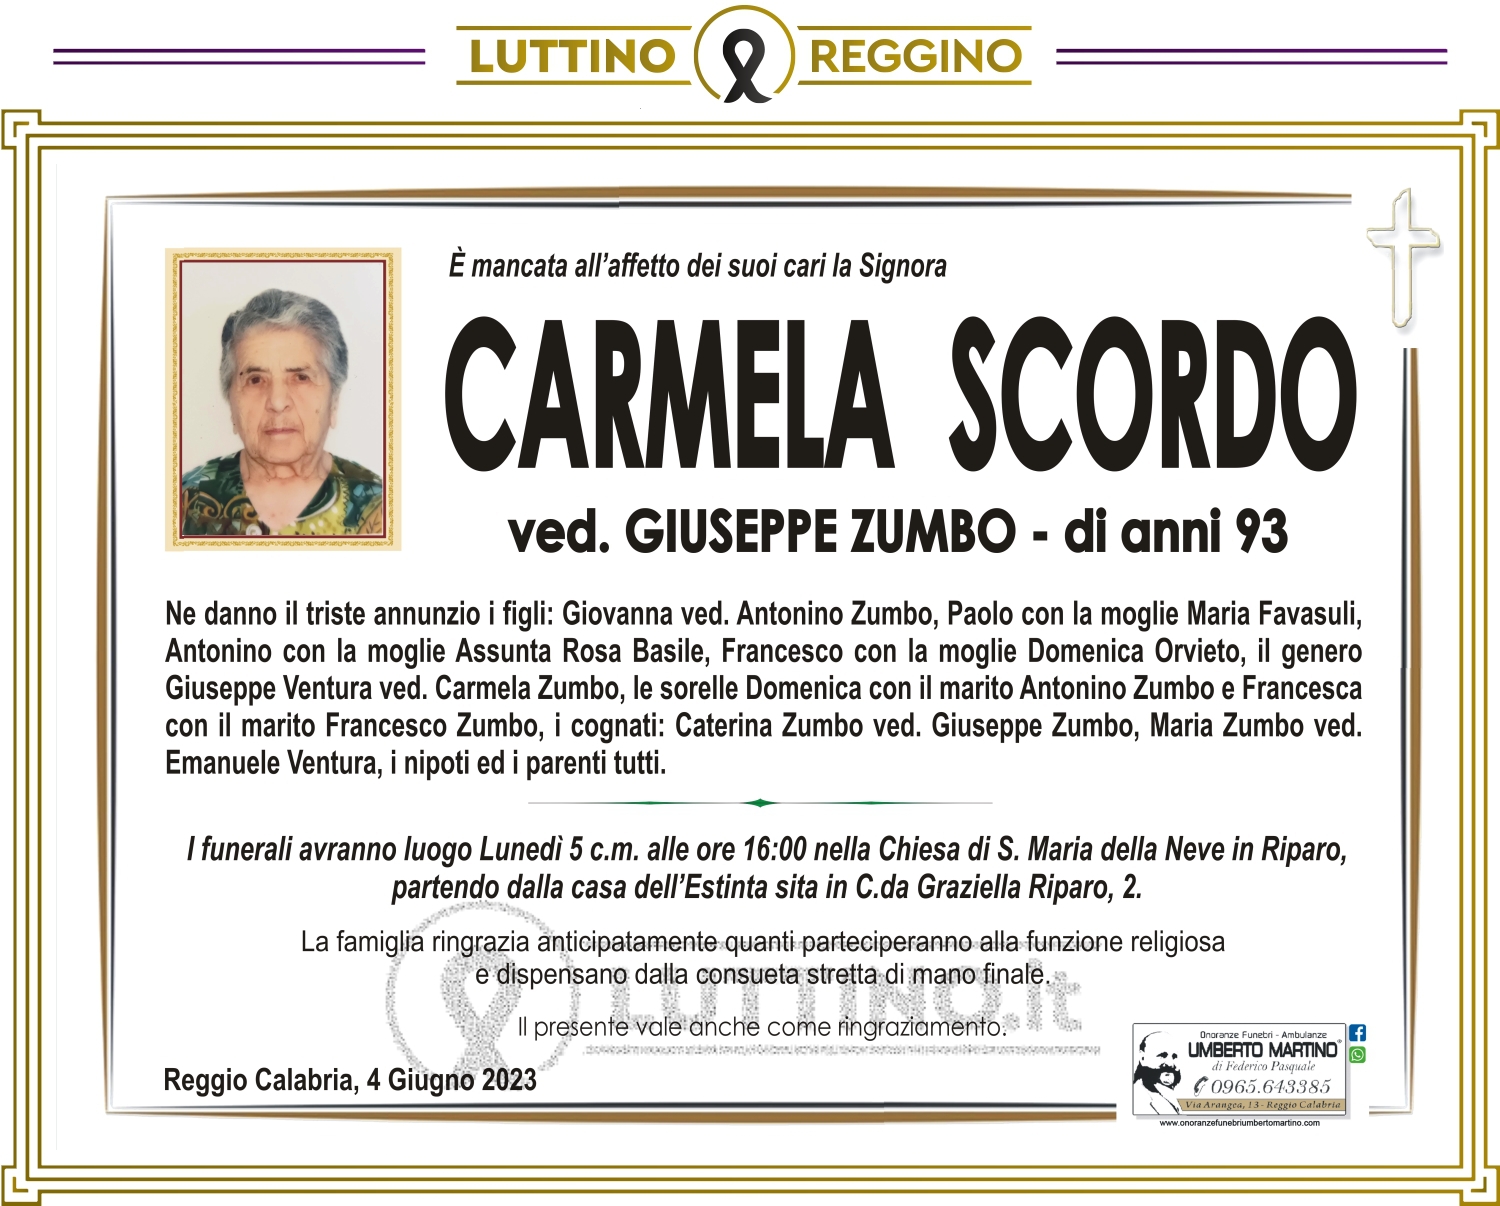 Carmela Scordo